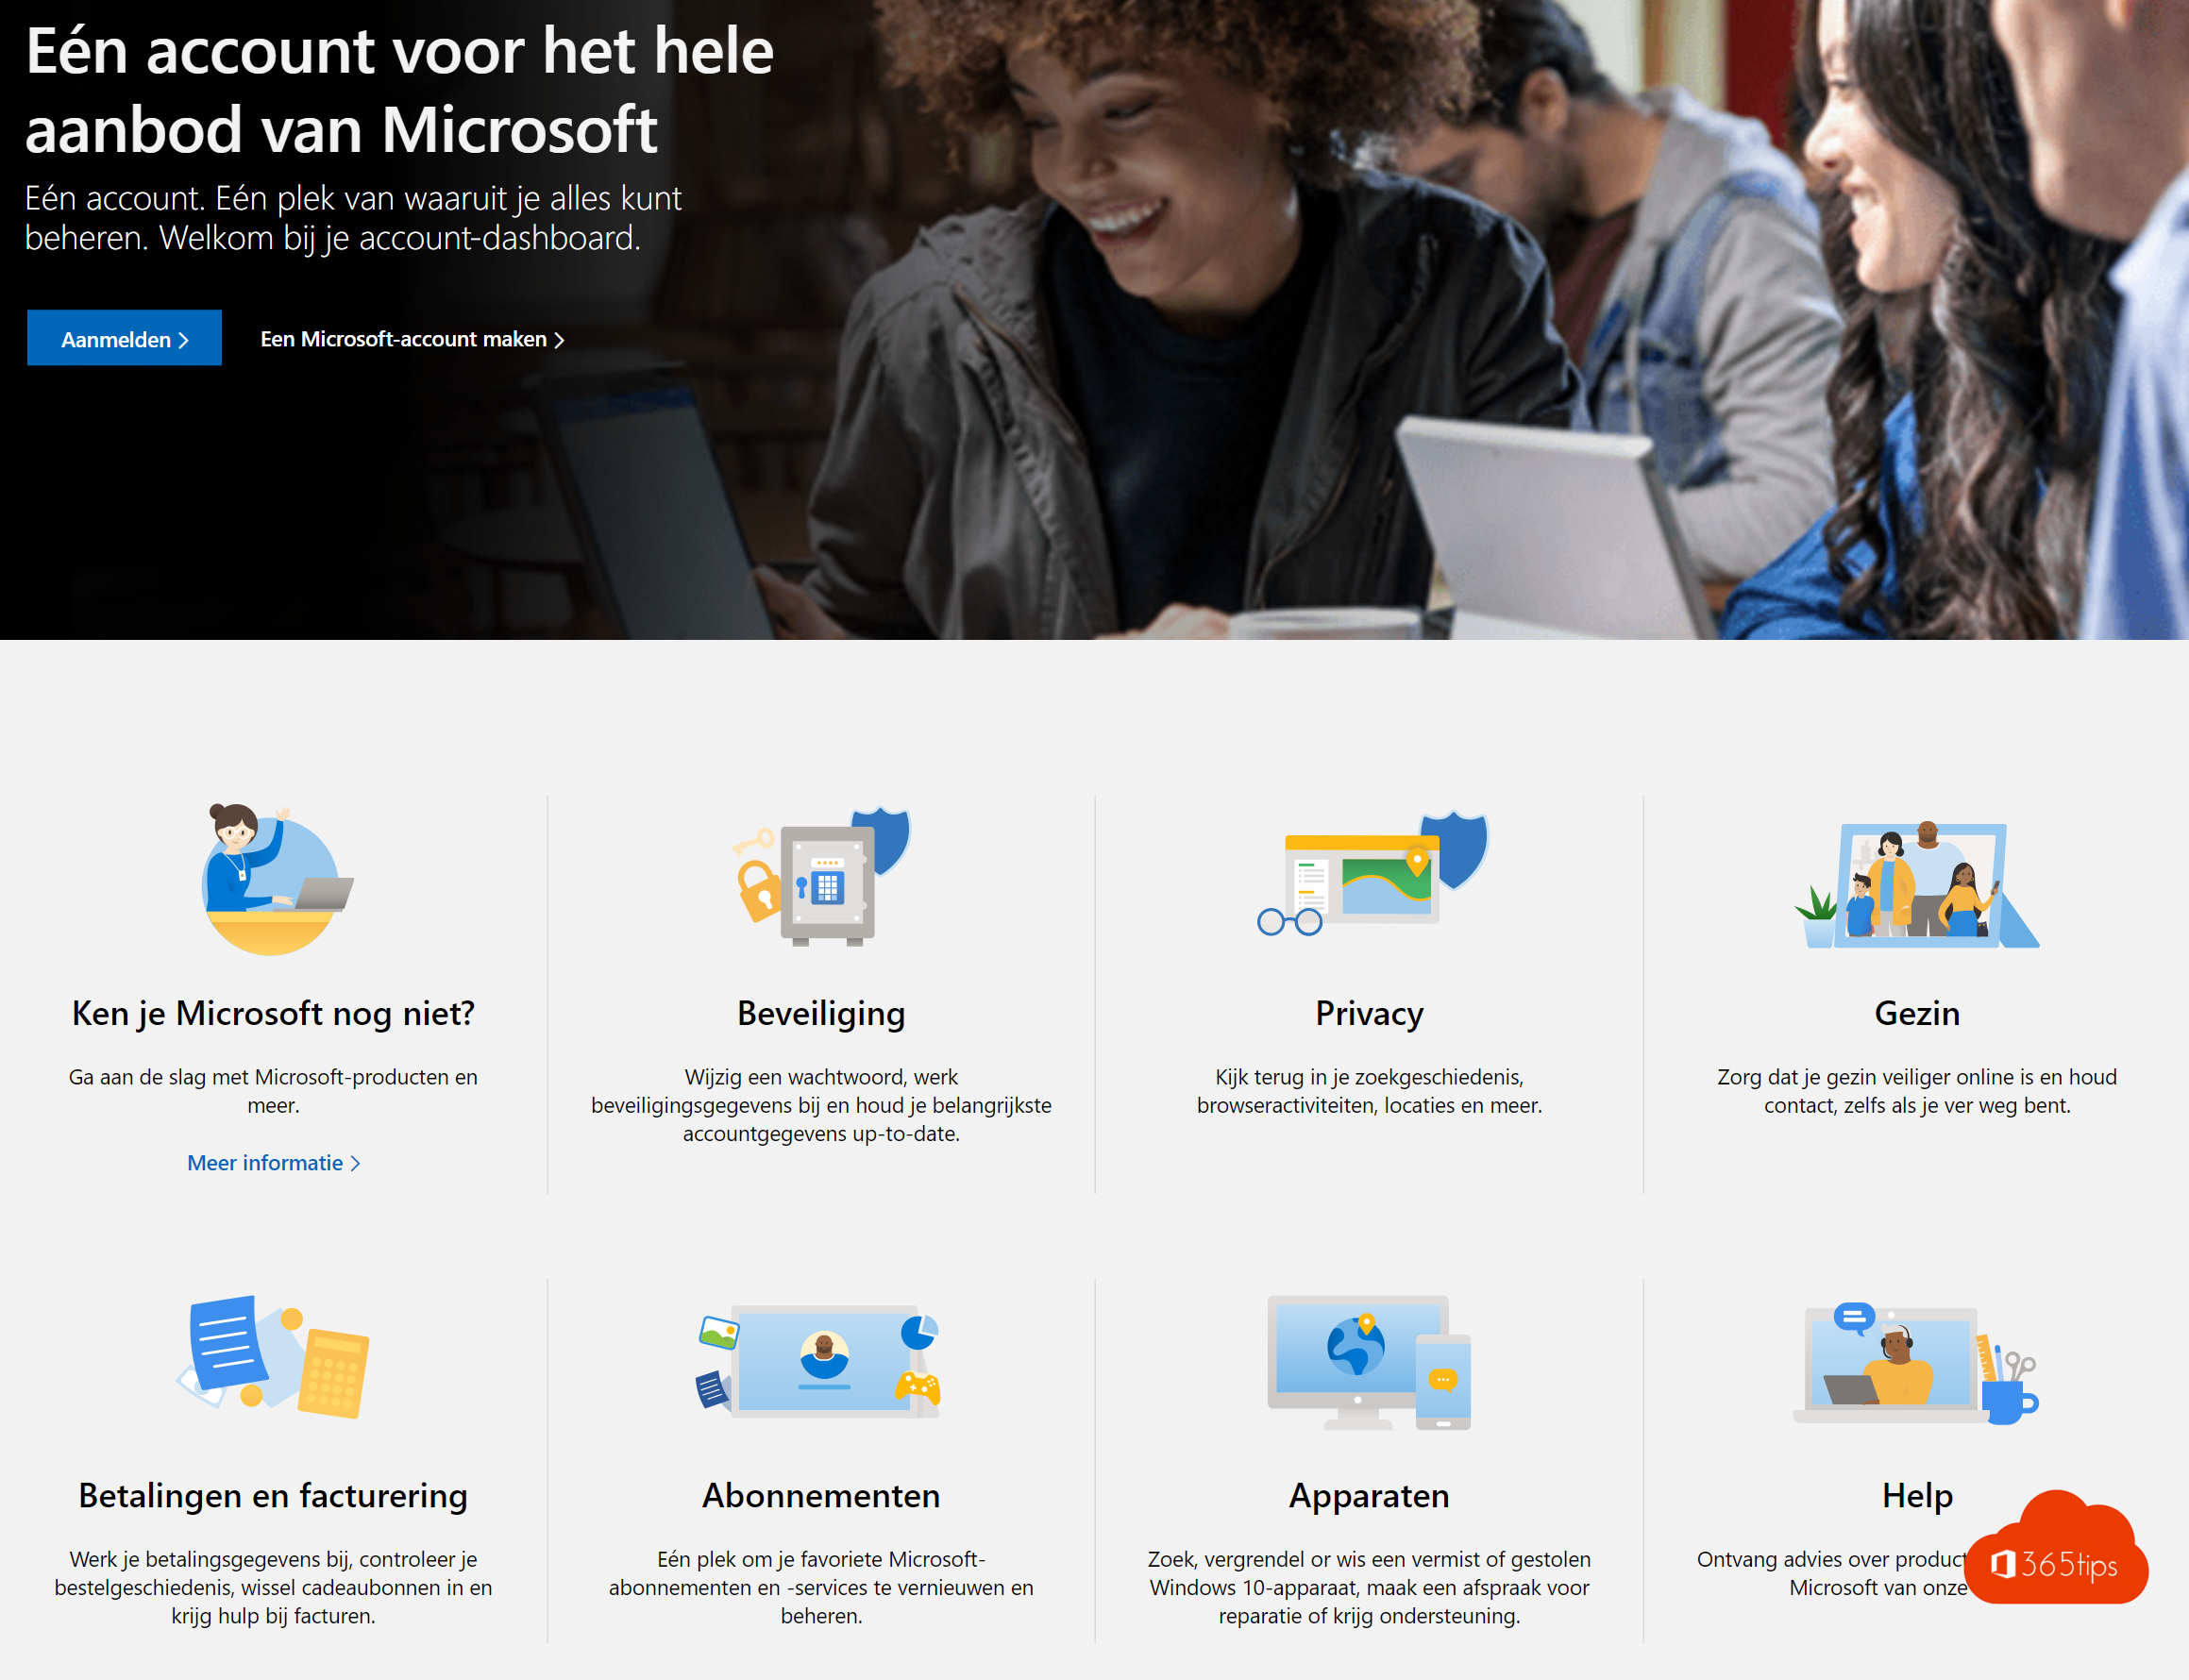 💁 ¿Cómo puedes crear una cuenta gratuita de Outlook?